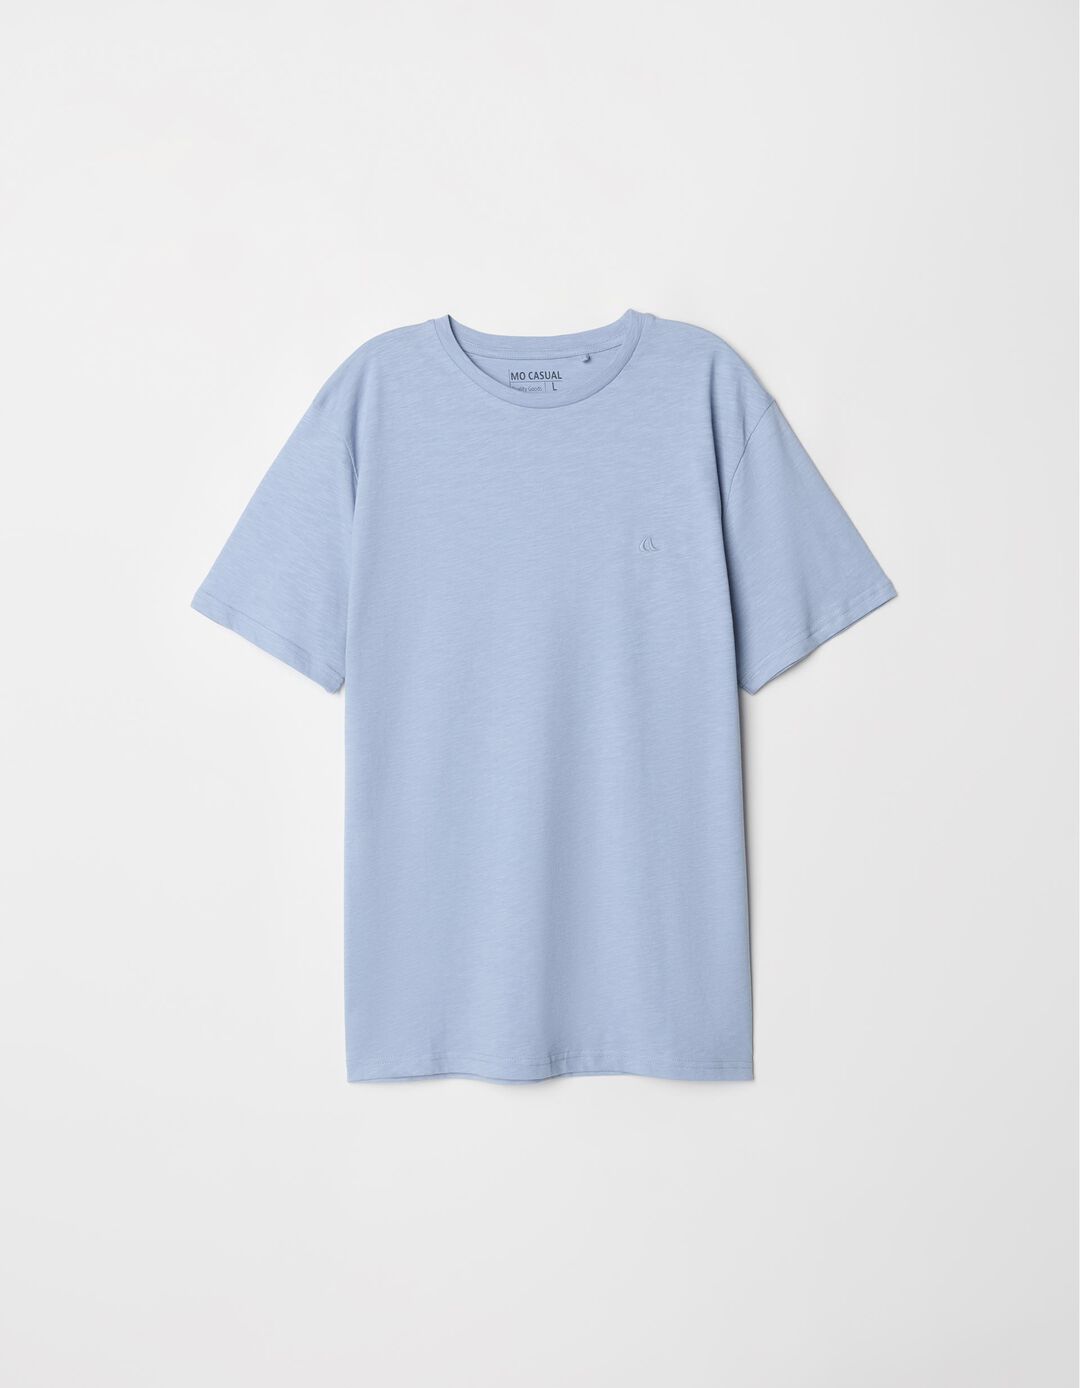 T-shirt Slub, Homem, Azul Claro